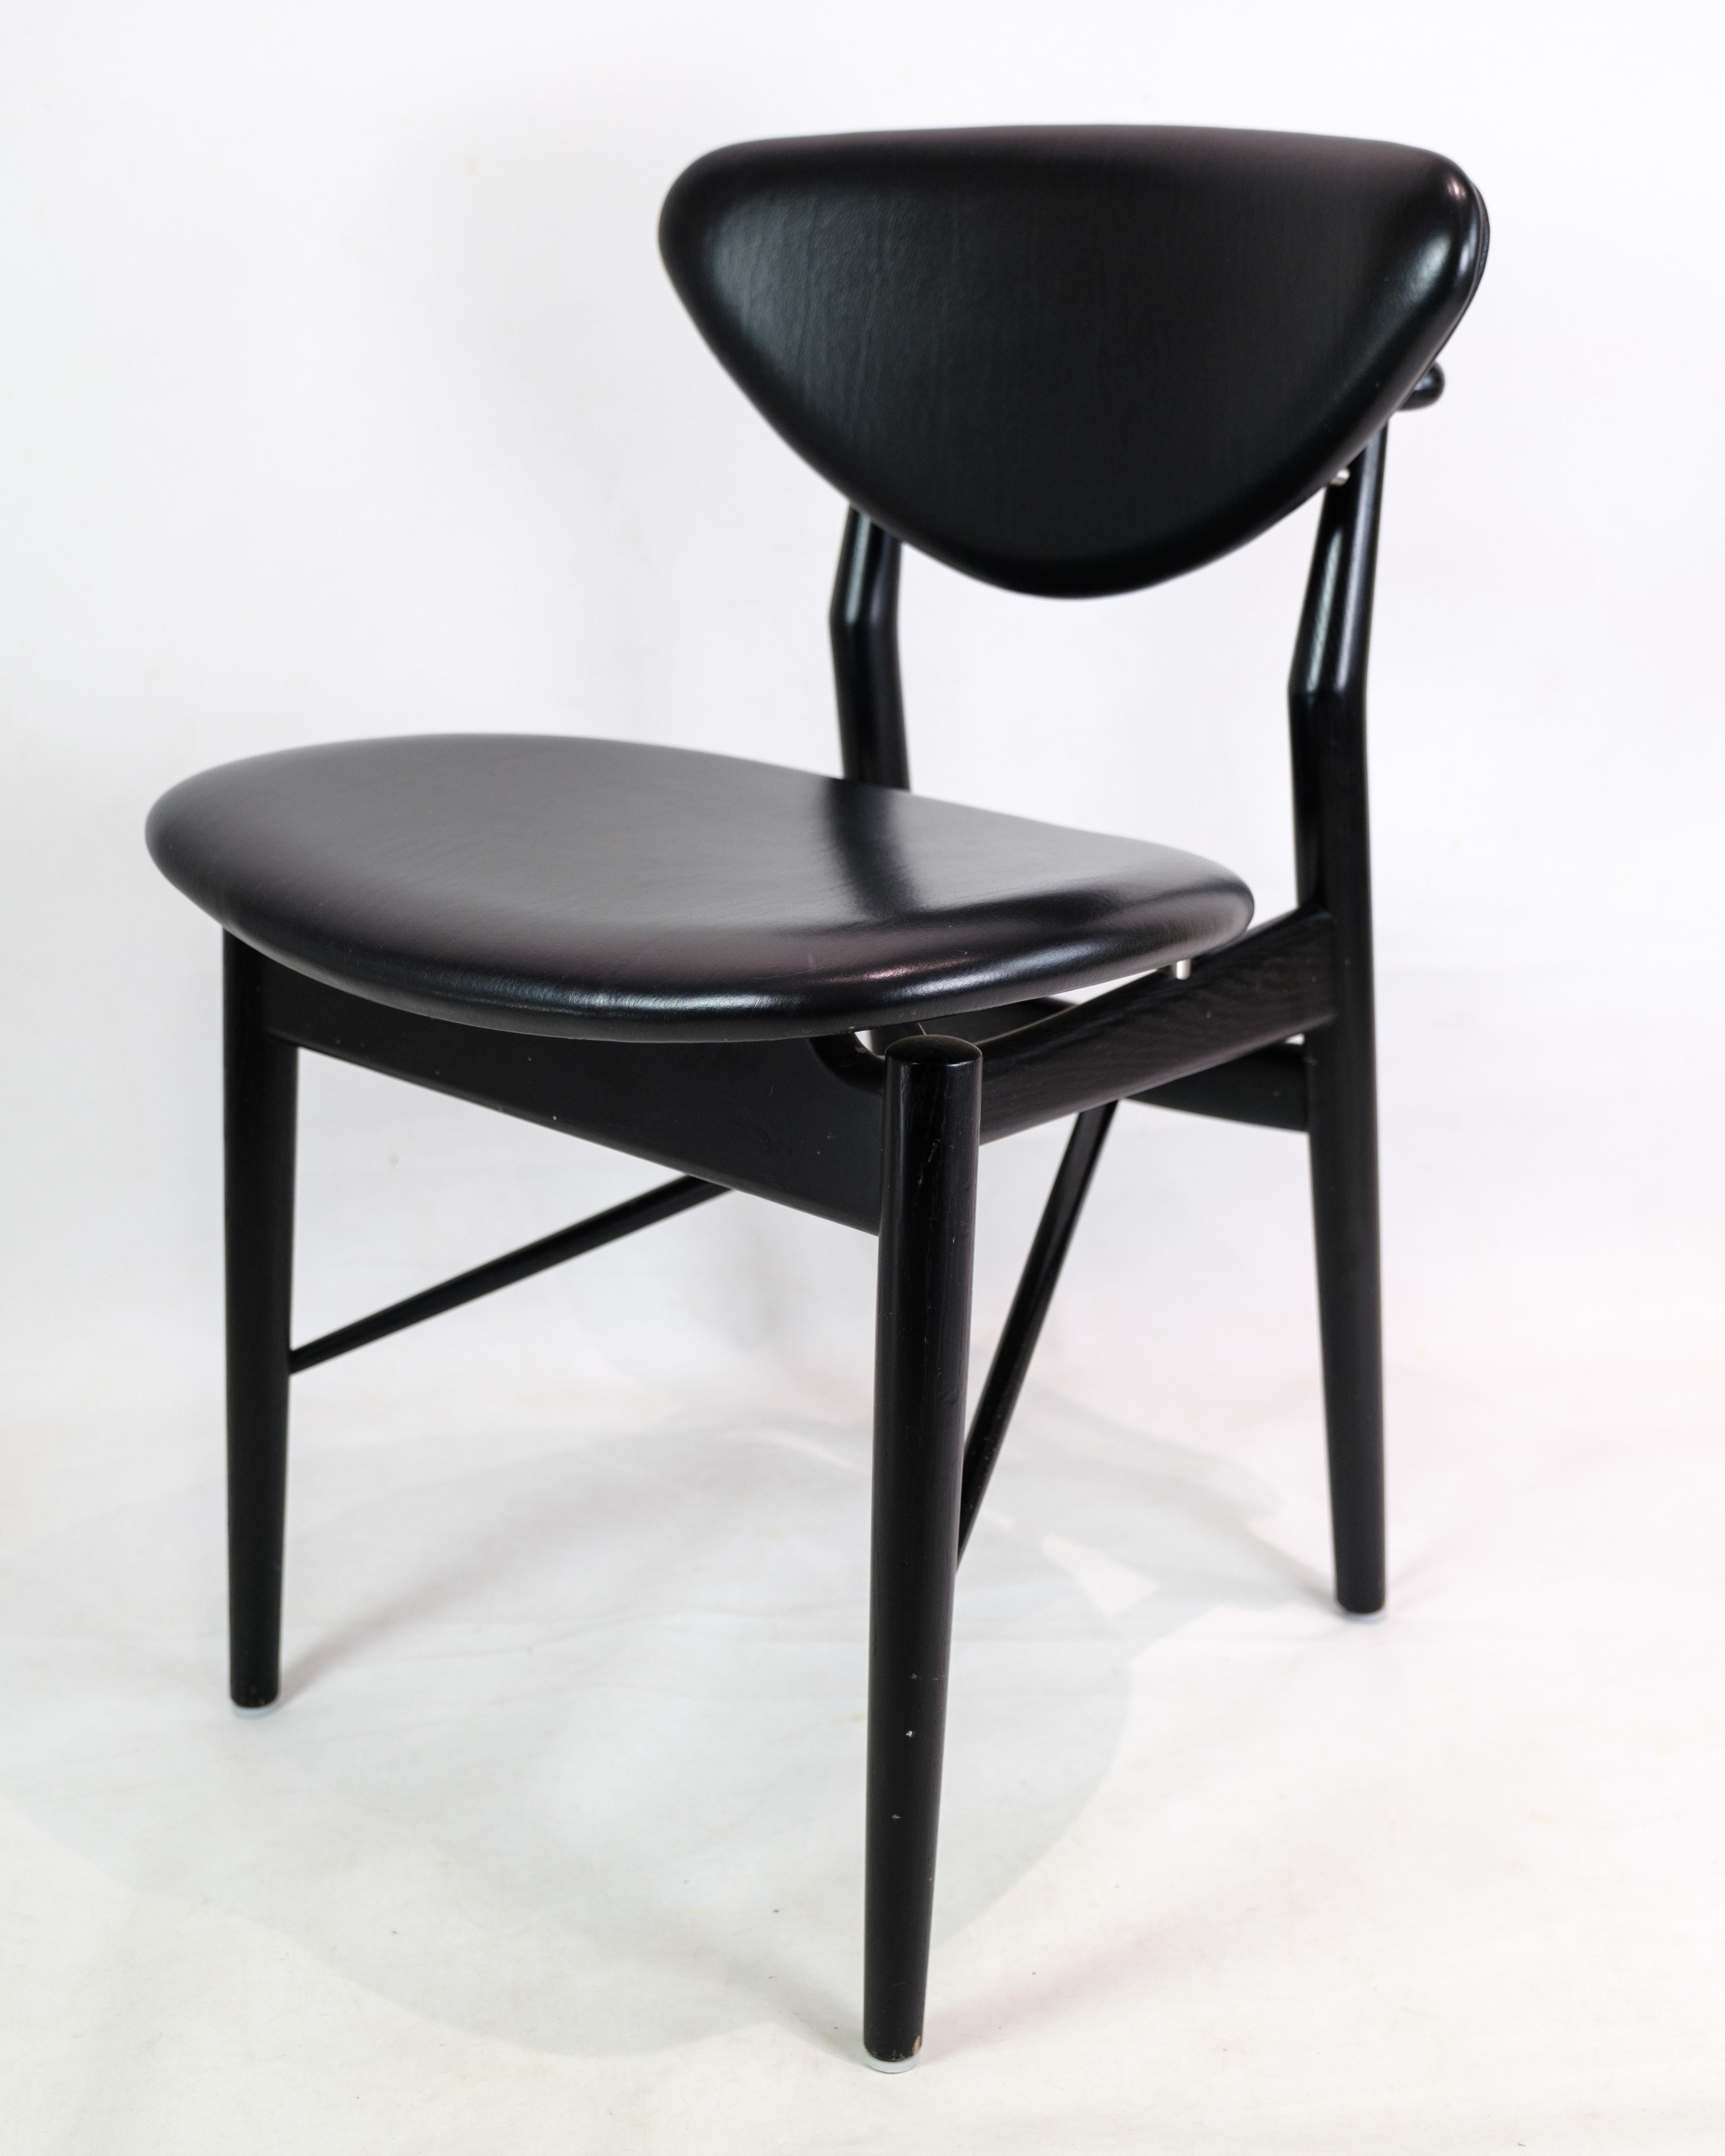 Chaise modèle 108, conçue par Finn Juhls en chêne peint en noir avec un cuir élégant noir de la plus haute qualité produit par la Maison Finn Juhl. La philosophie de Finn Juhls, qui consiste à séparer le porteur du porté et à créer des espaces et